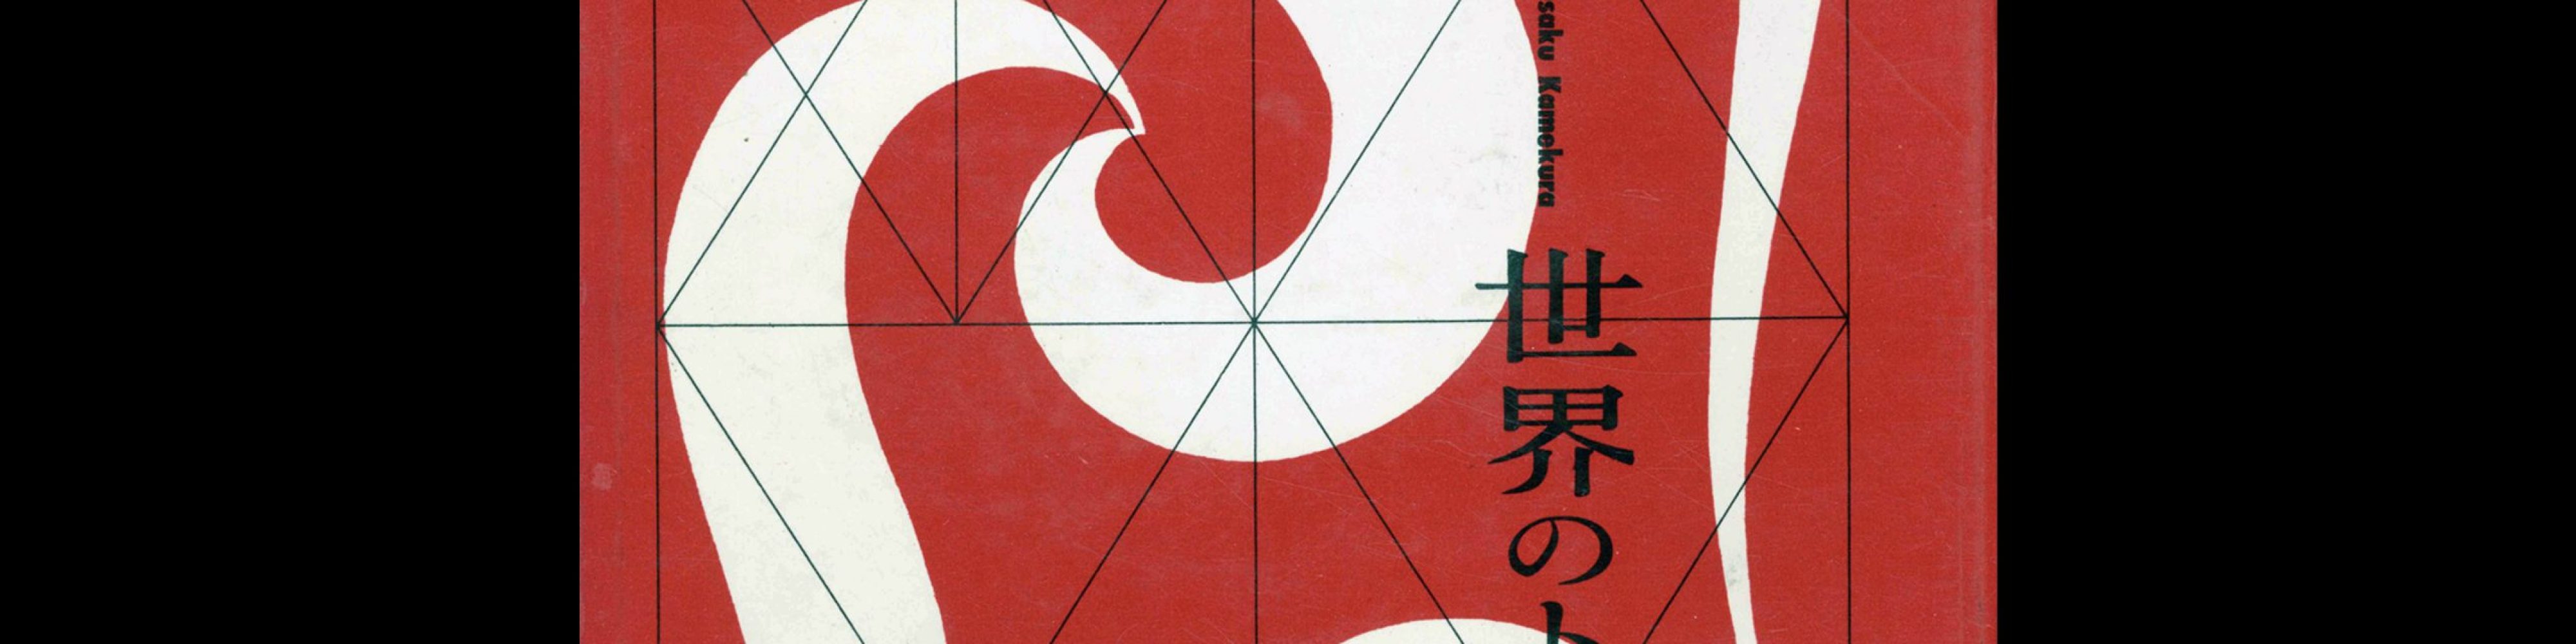 Trademarks of the World, Yusaku Kamekura, 1958